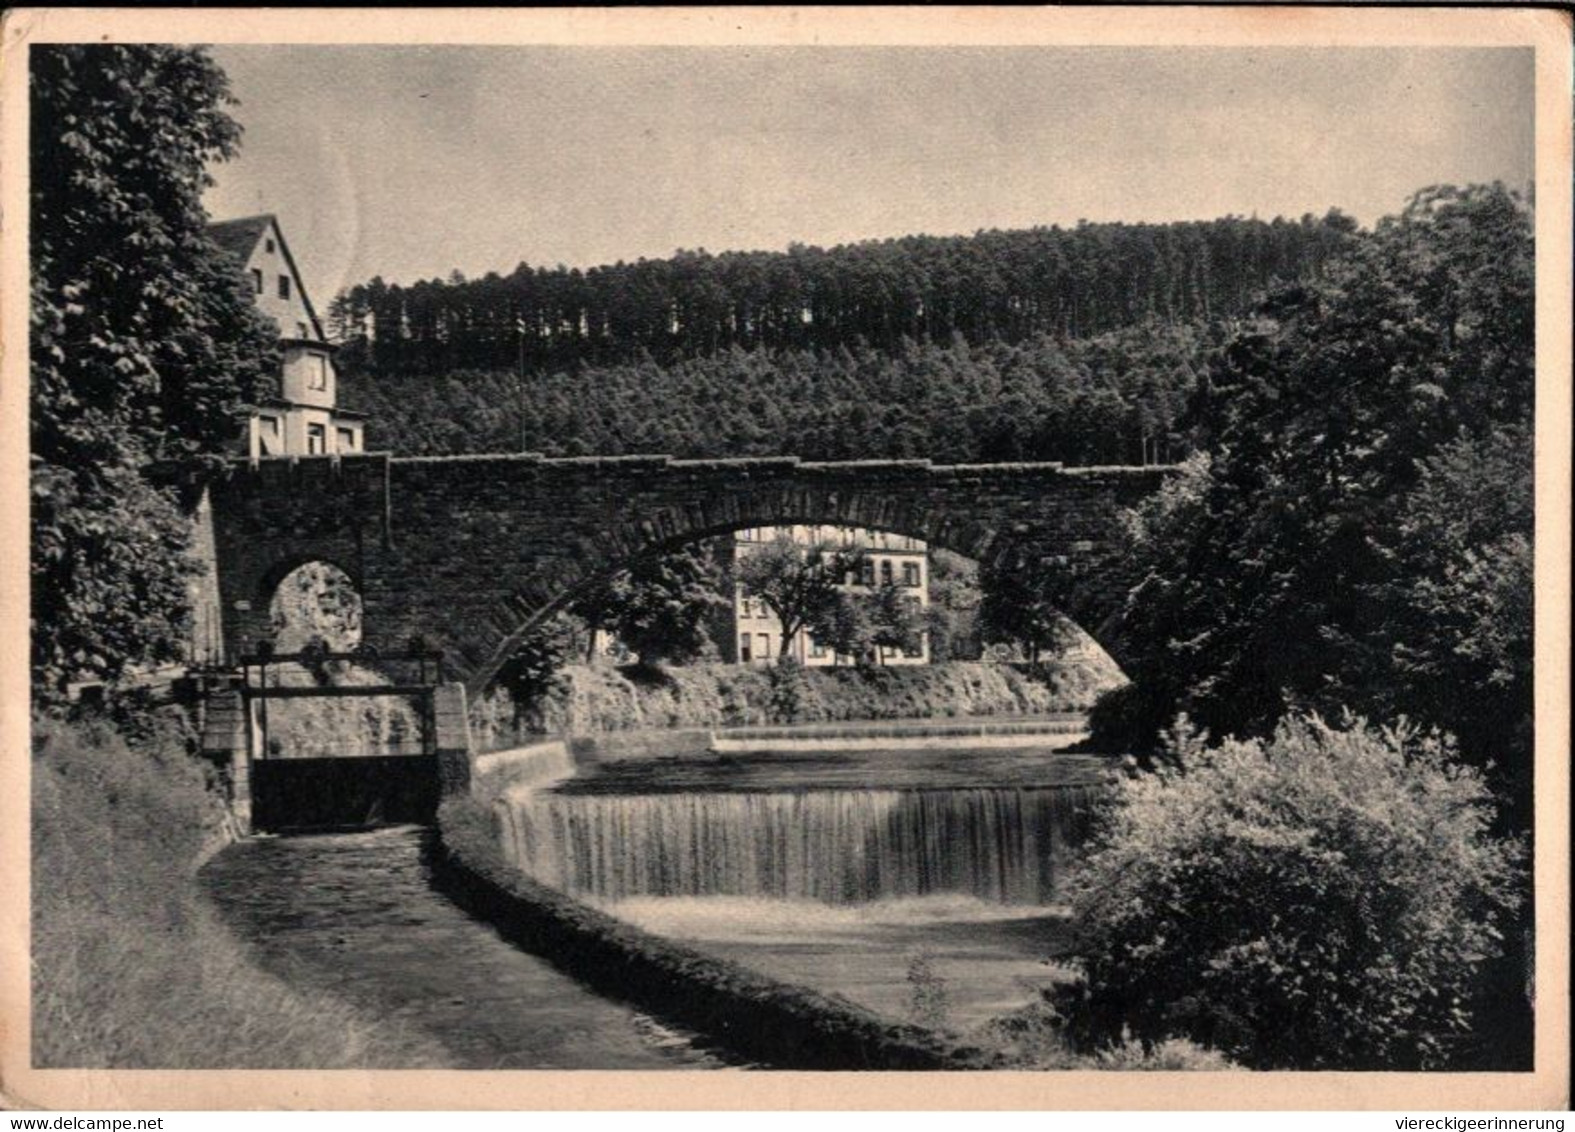 ! 1936 Alte Ansichtskarte Aus Pforzheim, Dillweissenstein, Brücke, Bridge, Nagold, Briefmarke Mit Firmenlochung, Perfin - Brücken